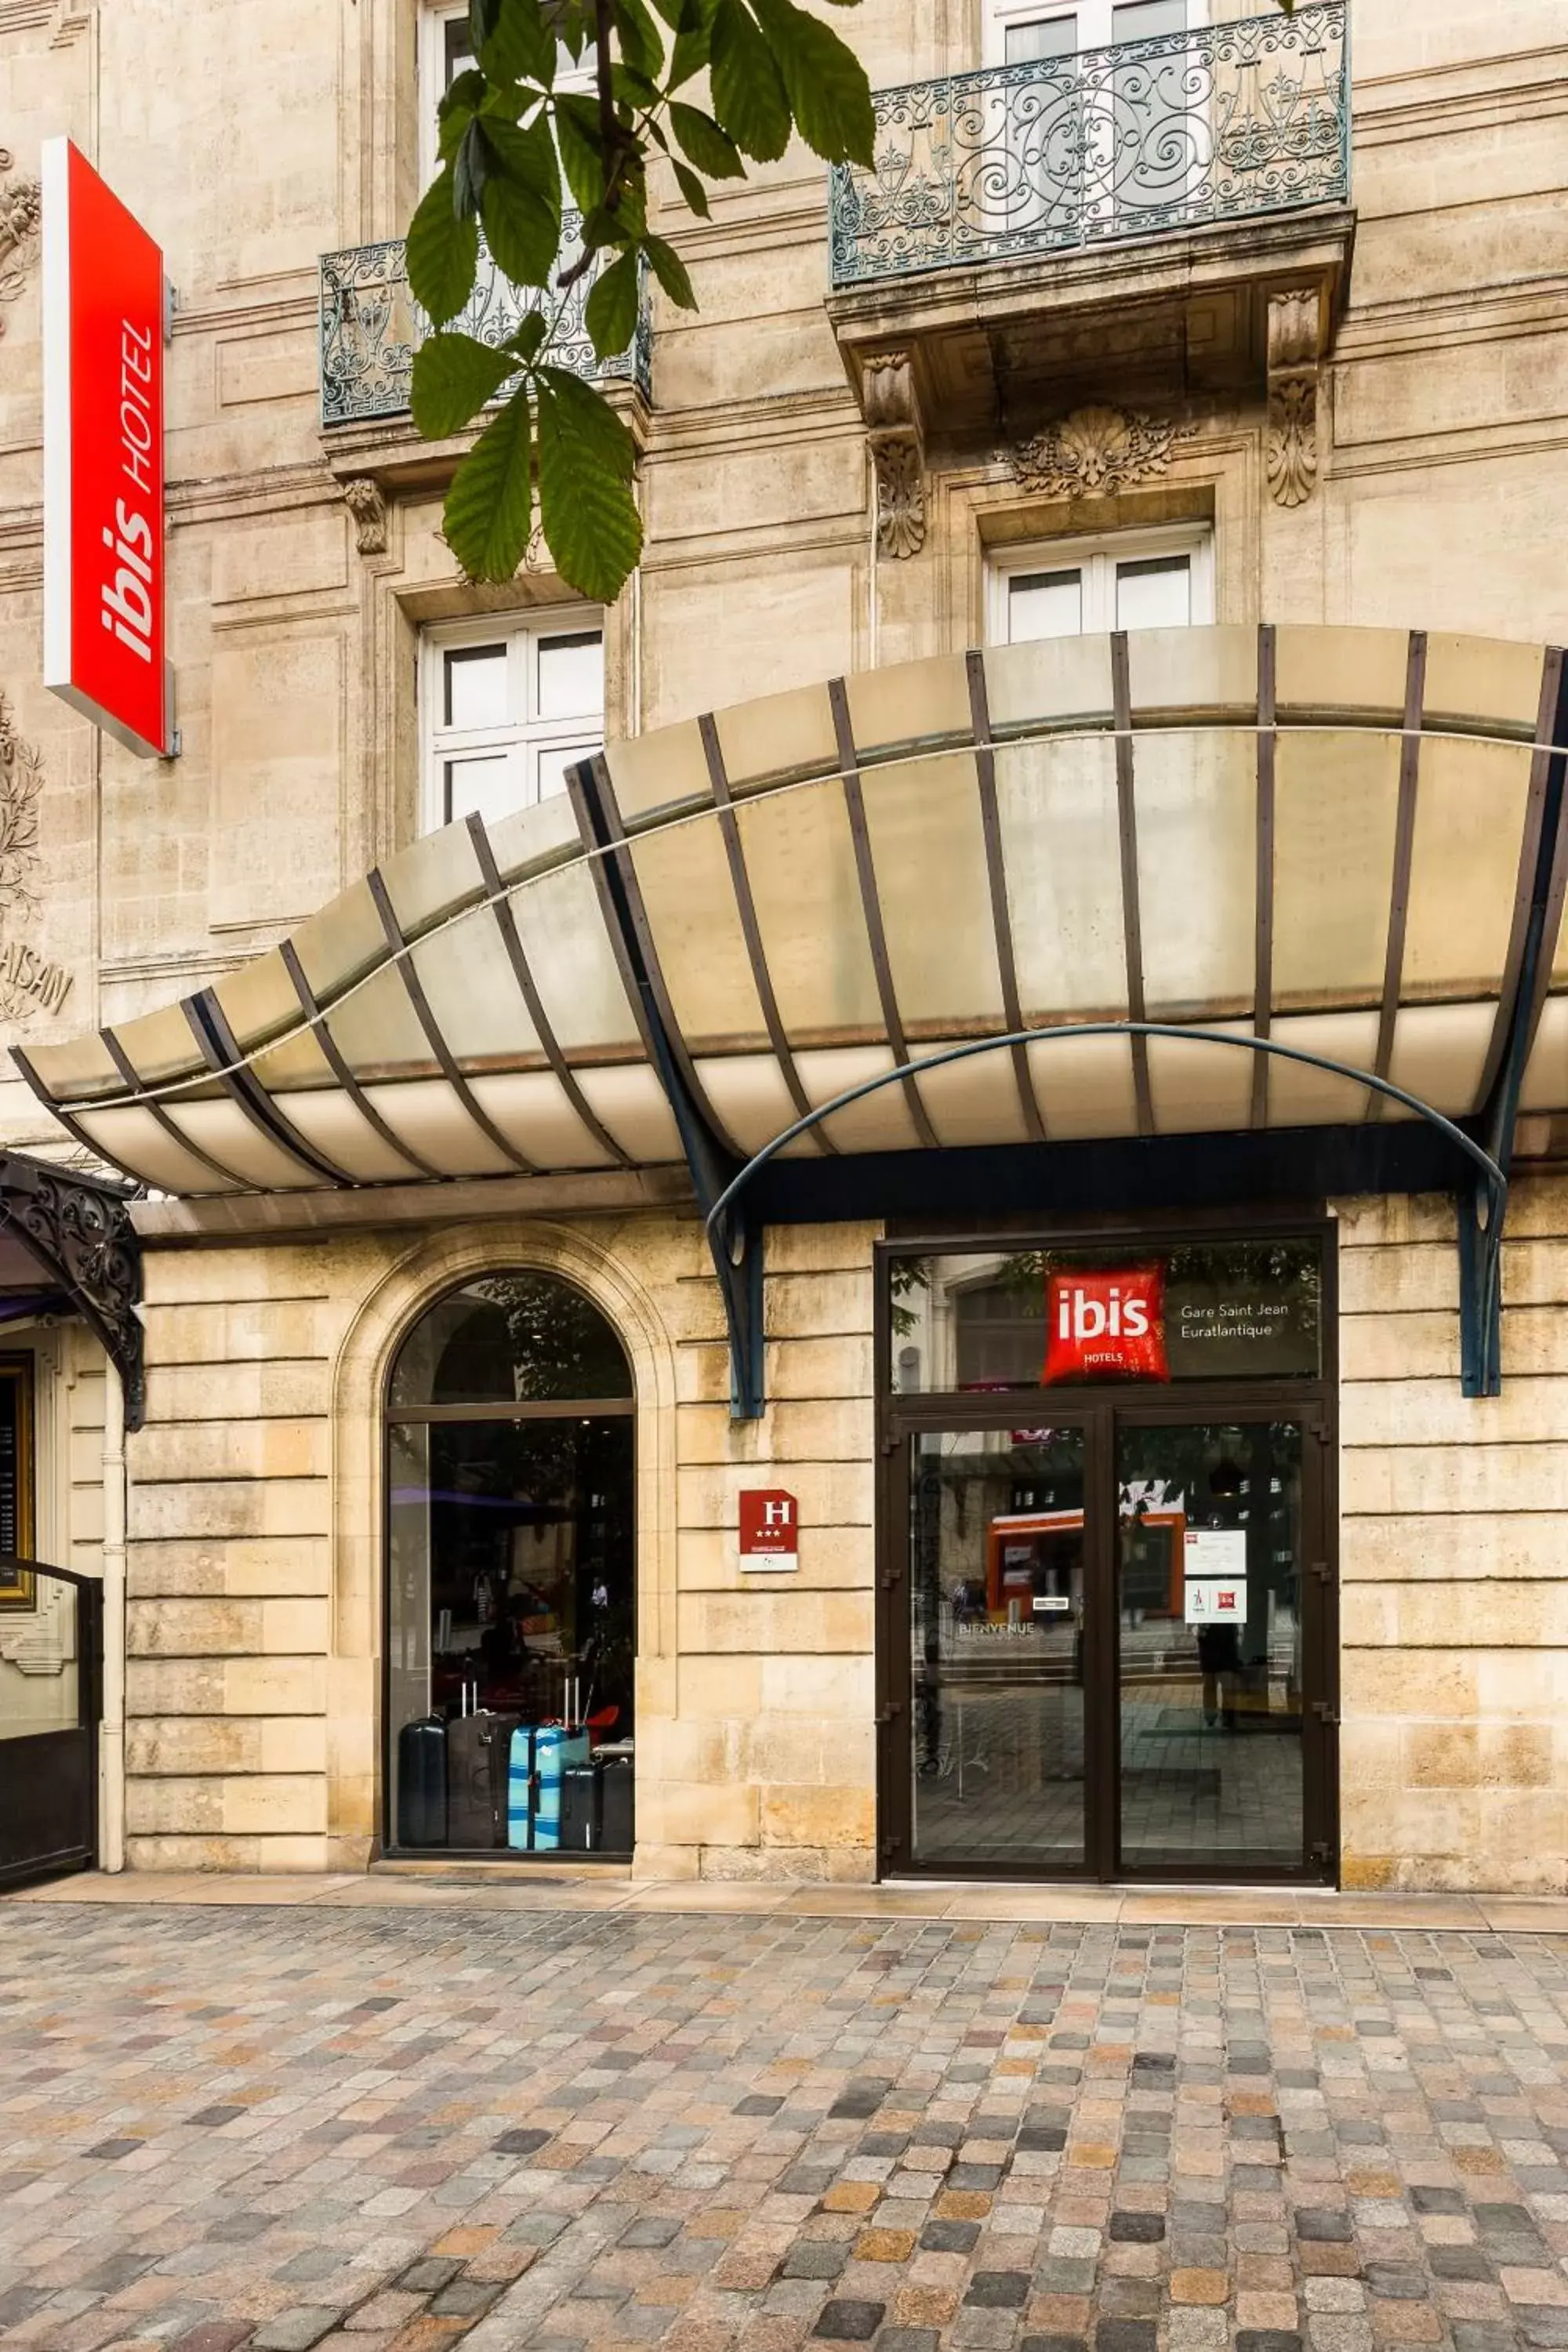 Facade/entrance in ibis Bordeaux Centre Gare Saint Jean Euratlantique